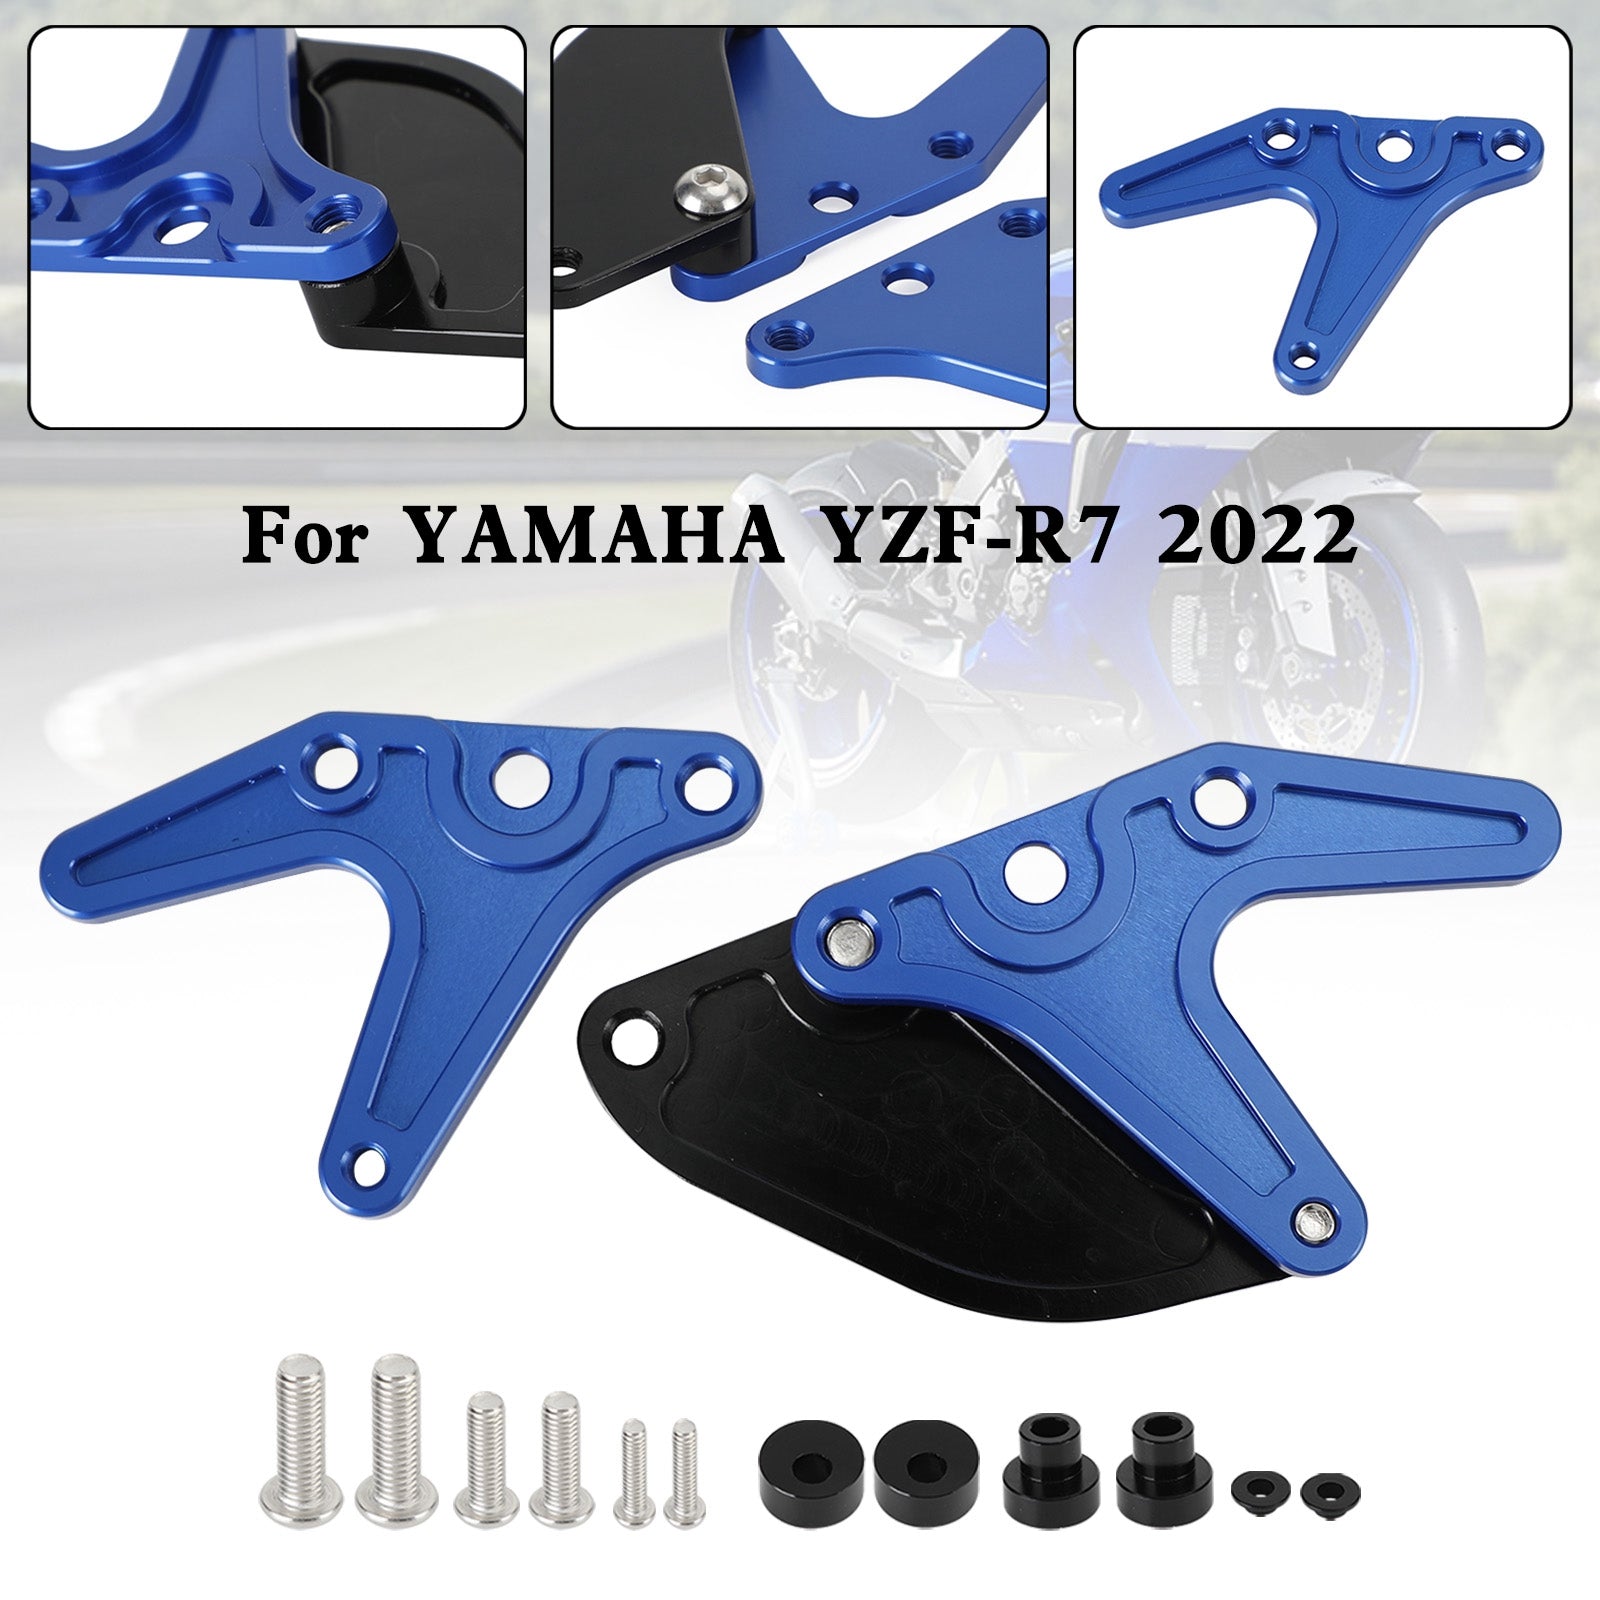 Protezione per le dita del pignone con gancio per supporto per moto in alluminio per Yamaha YZF-R7 R7 2022